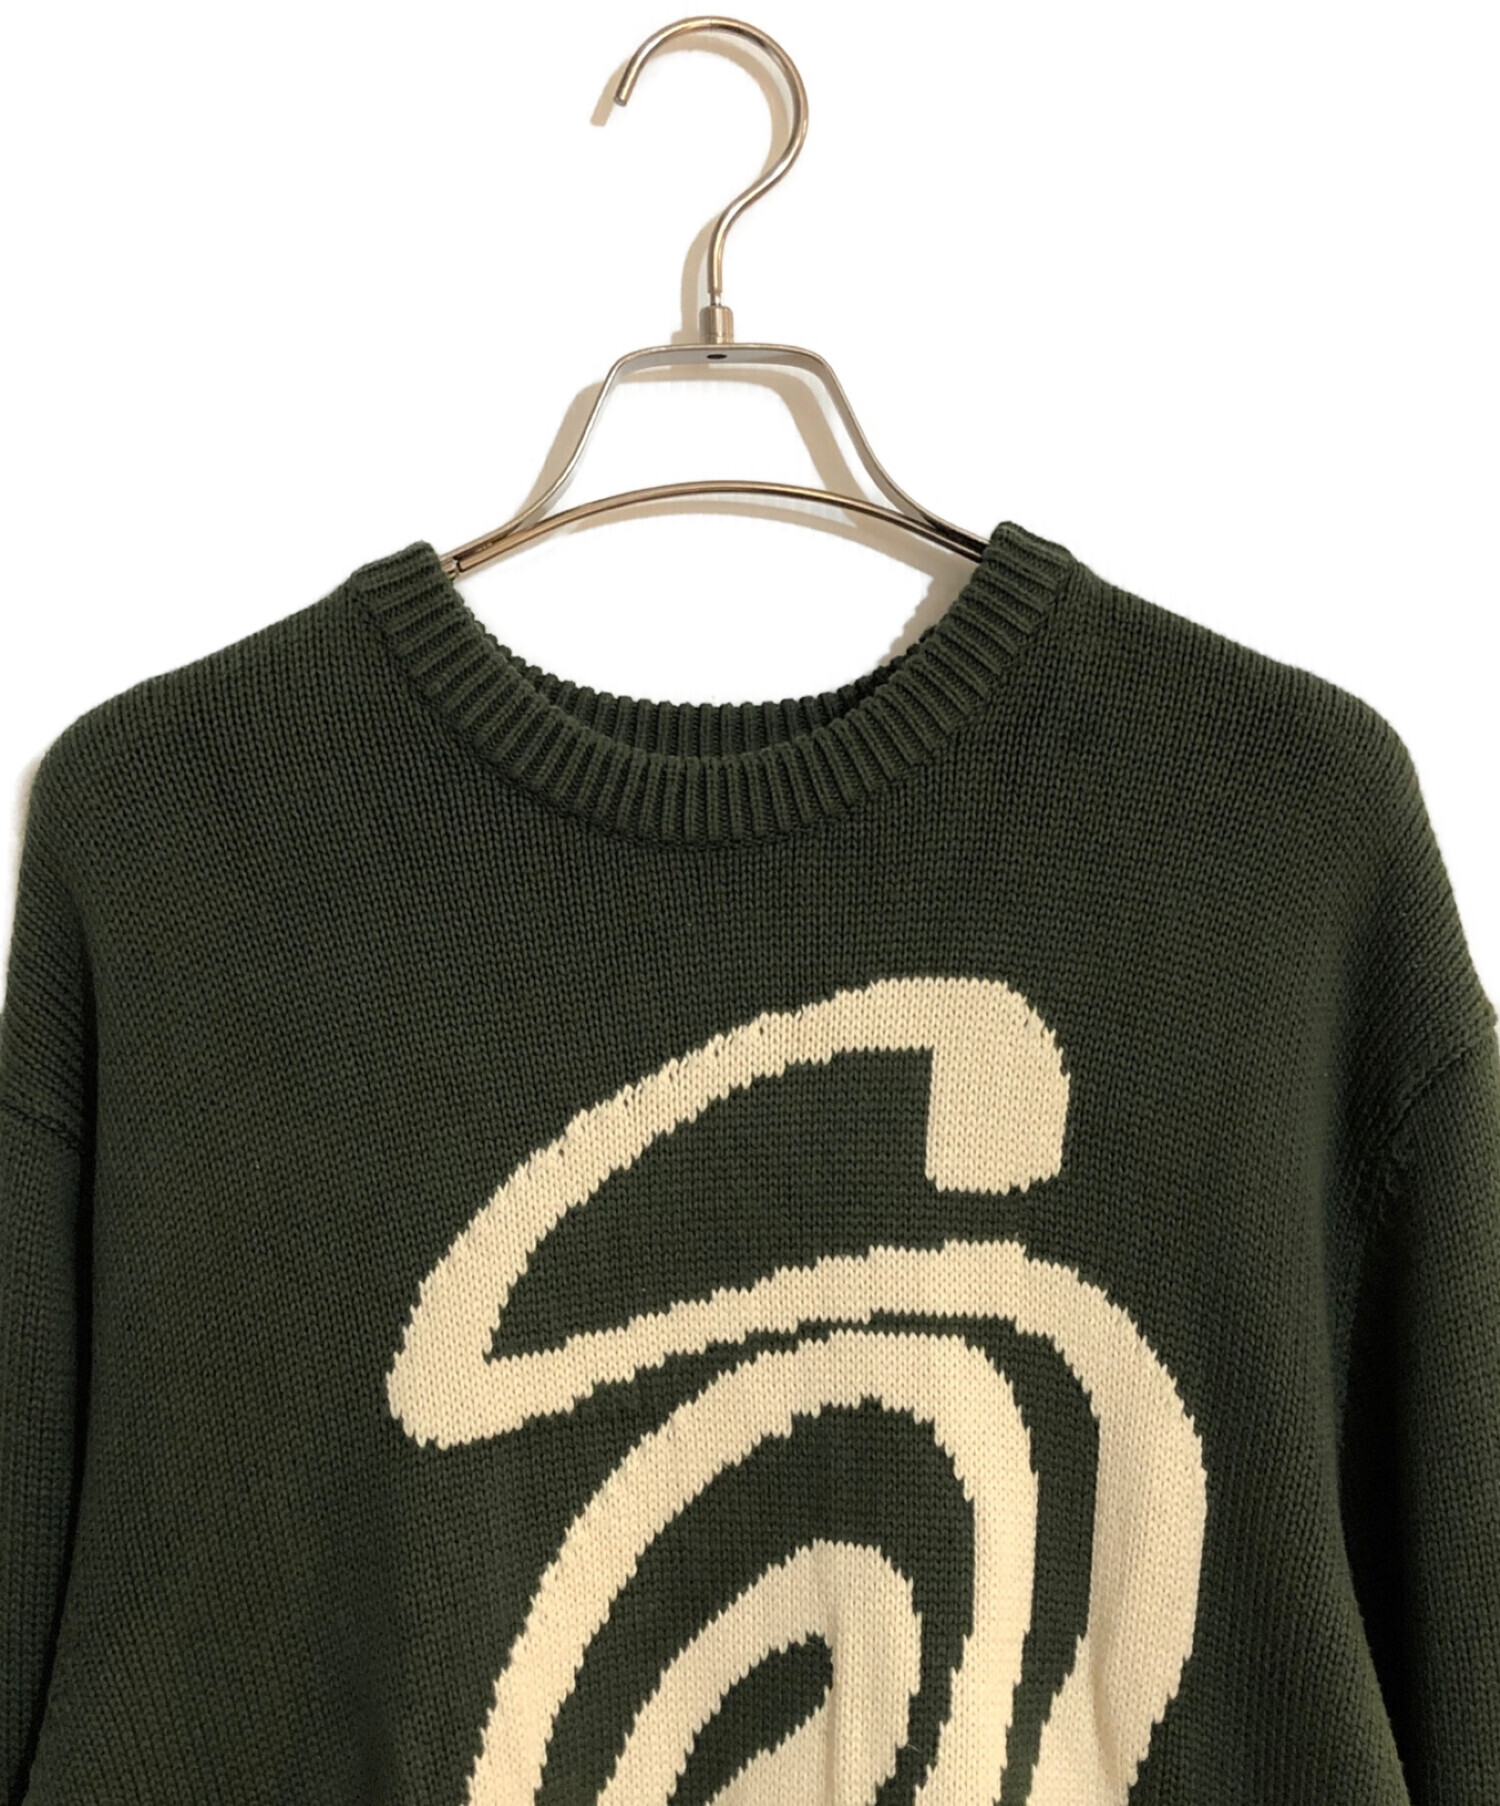 stussy (ステューシー) Curly S Sweater/カーリー S セーター グリーン サイズ:SIZE L